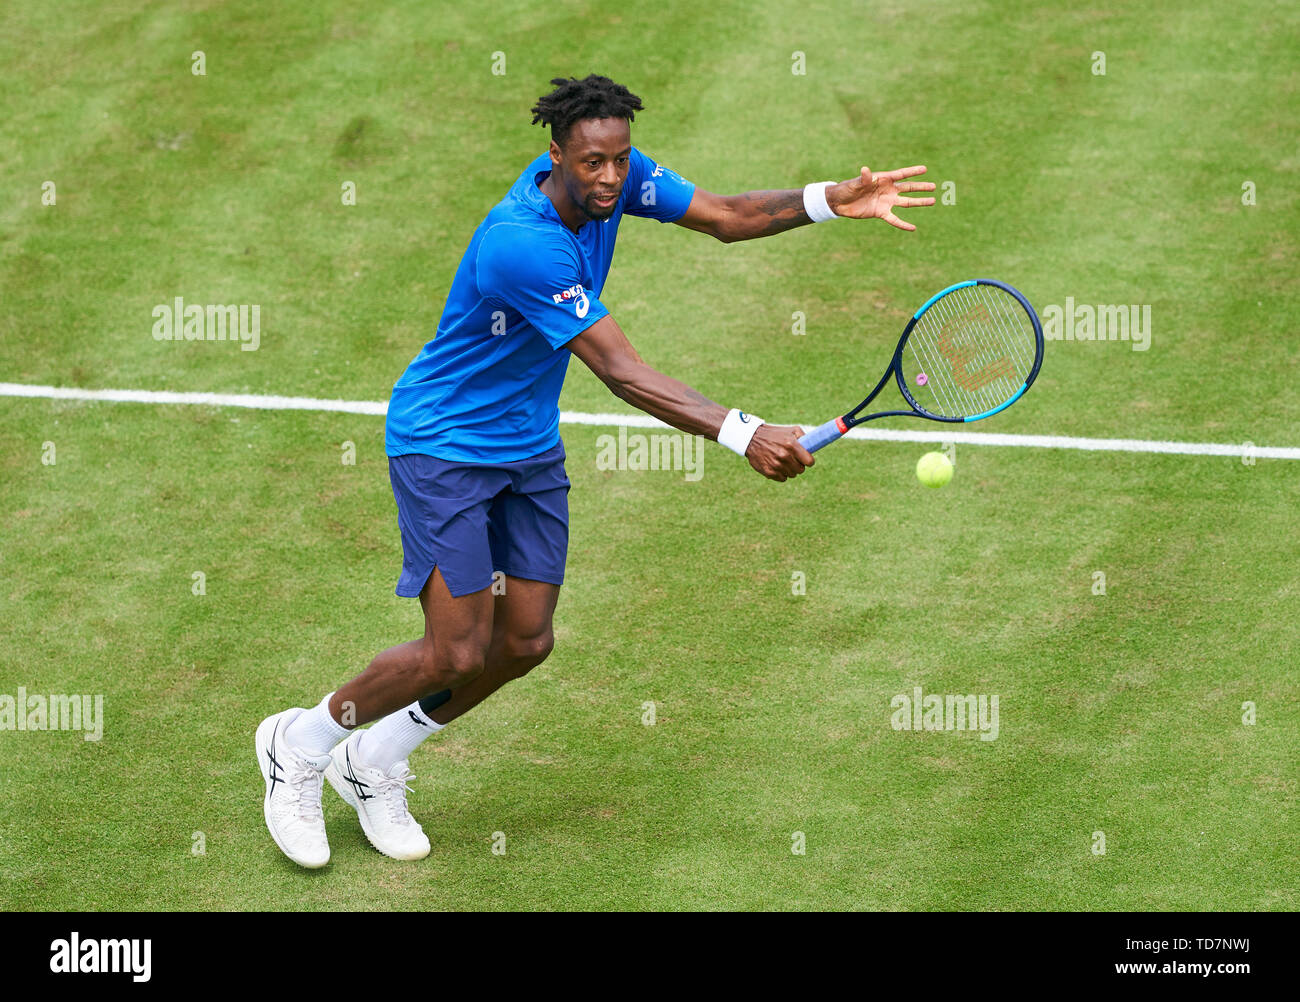 Stuttgart, Allemagne. 13 Juin, 2019. Gael MONFILS (FRA) en action dans son match contre Denis KUDLA (USA) à l'ATP Tennis Open Mercedes sur l'herbe à Stuttgart , Juin 13, 2019. Crédit : Peter Schatz/Alamy Live News Banque D'Images